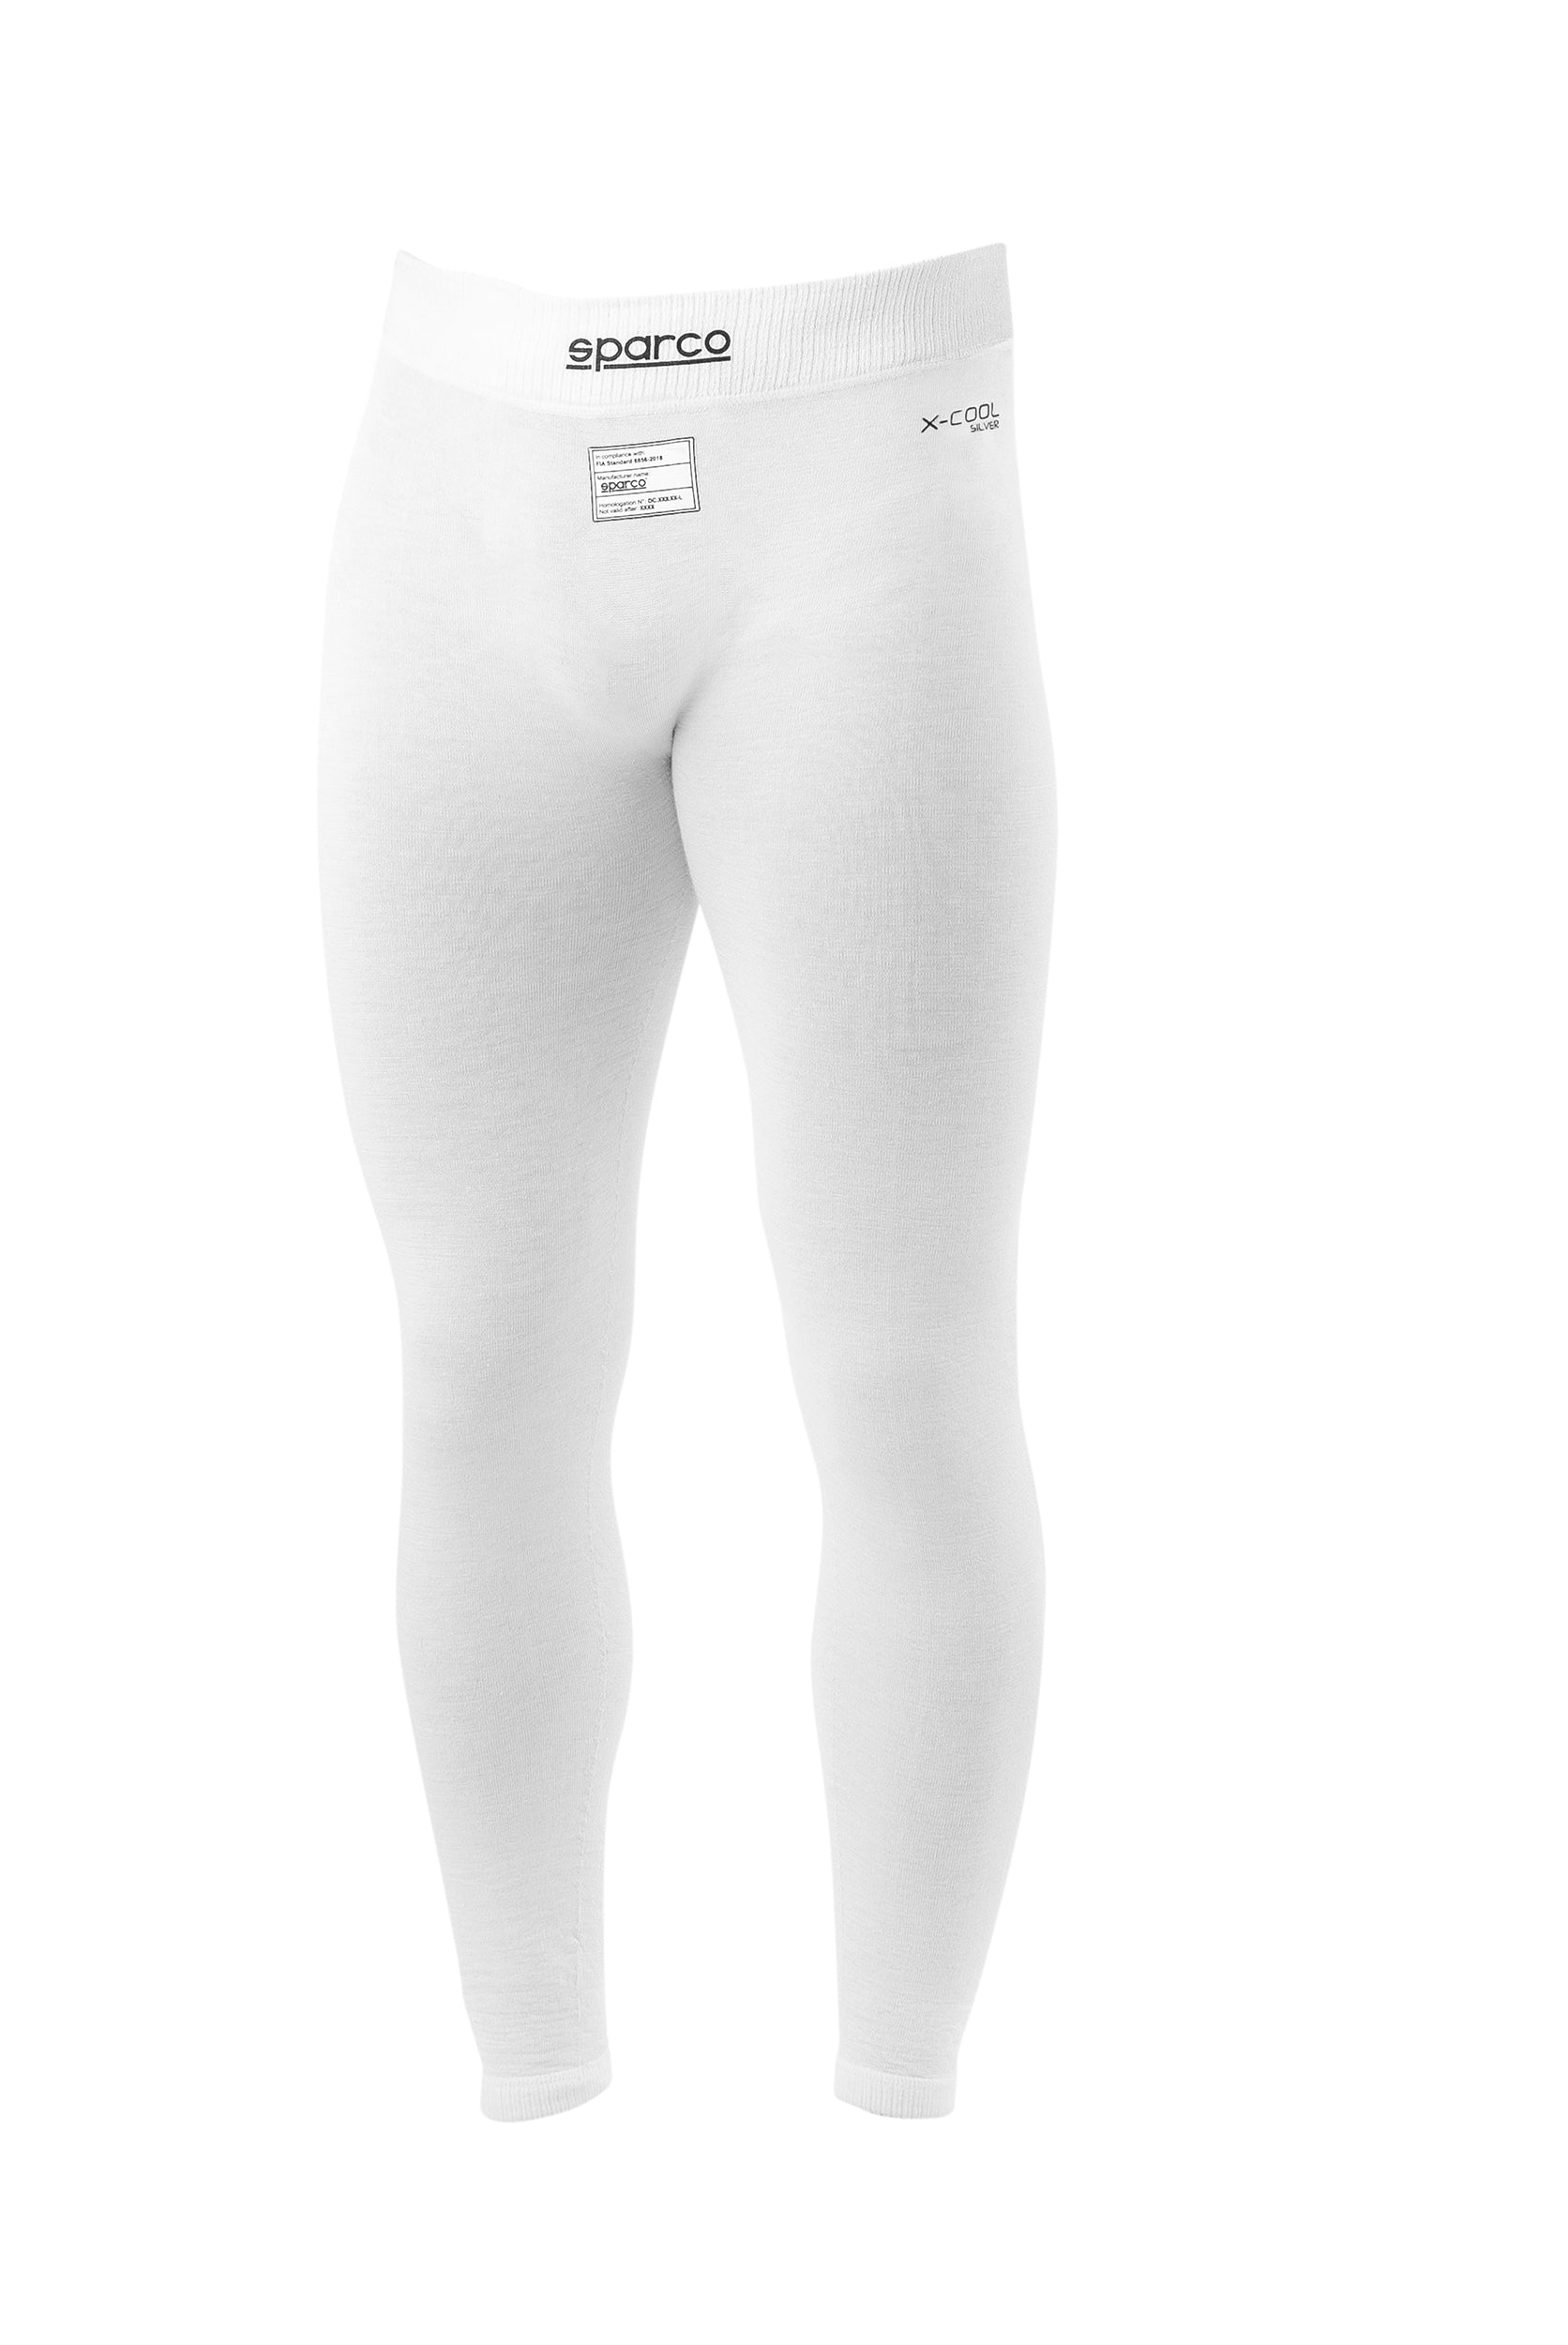 SPARCO 001789PBO5XXL Racing Bottom underwear RW-11 EVO, FIA 8856-2018, white, size XXL Photo-0 